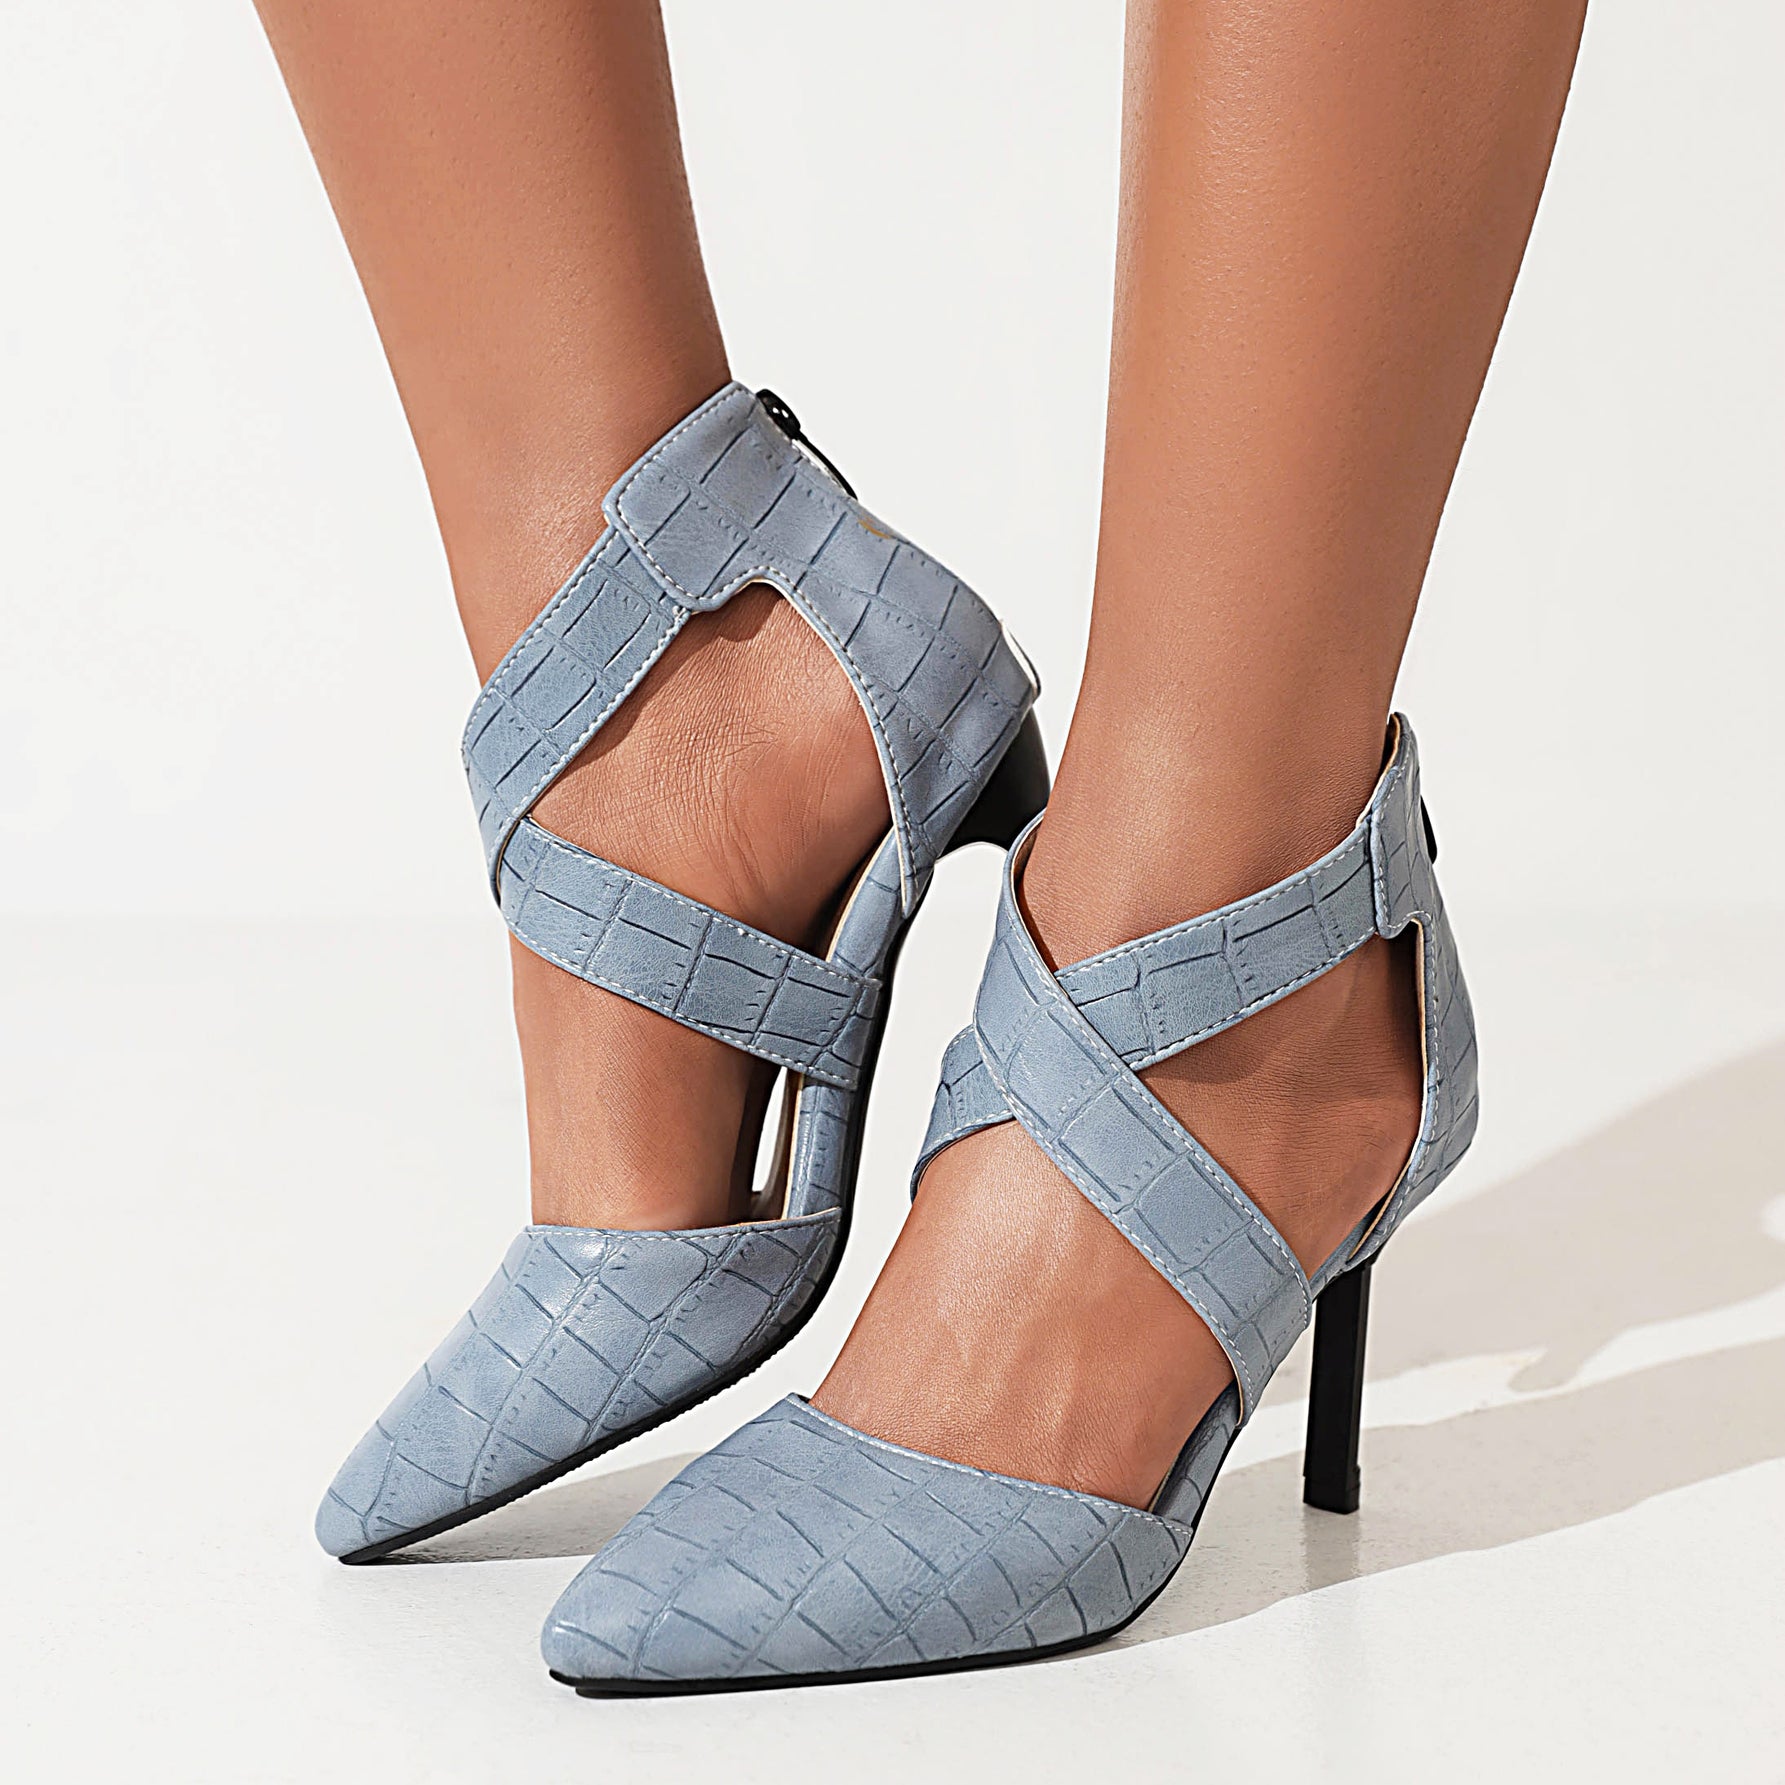 Bigsizeheels Cross Strap Pointed Toe Stiletto Heels Sandals - Blue best oversized womens heels from bigsizeheel®